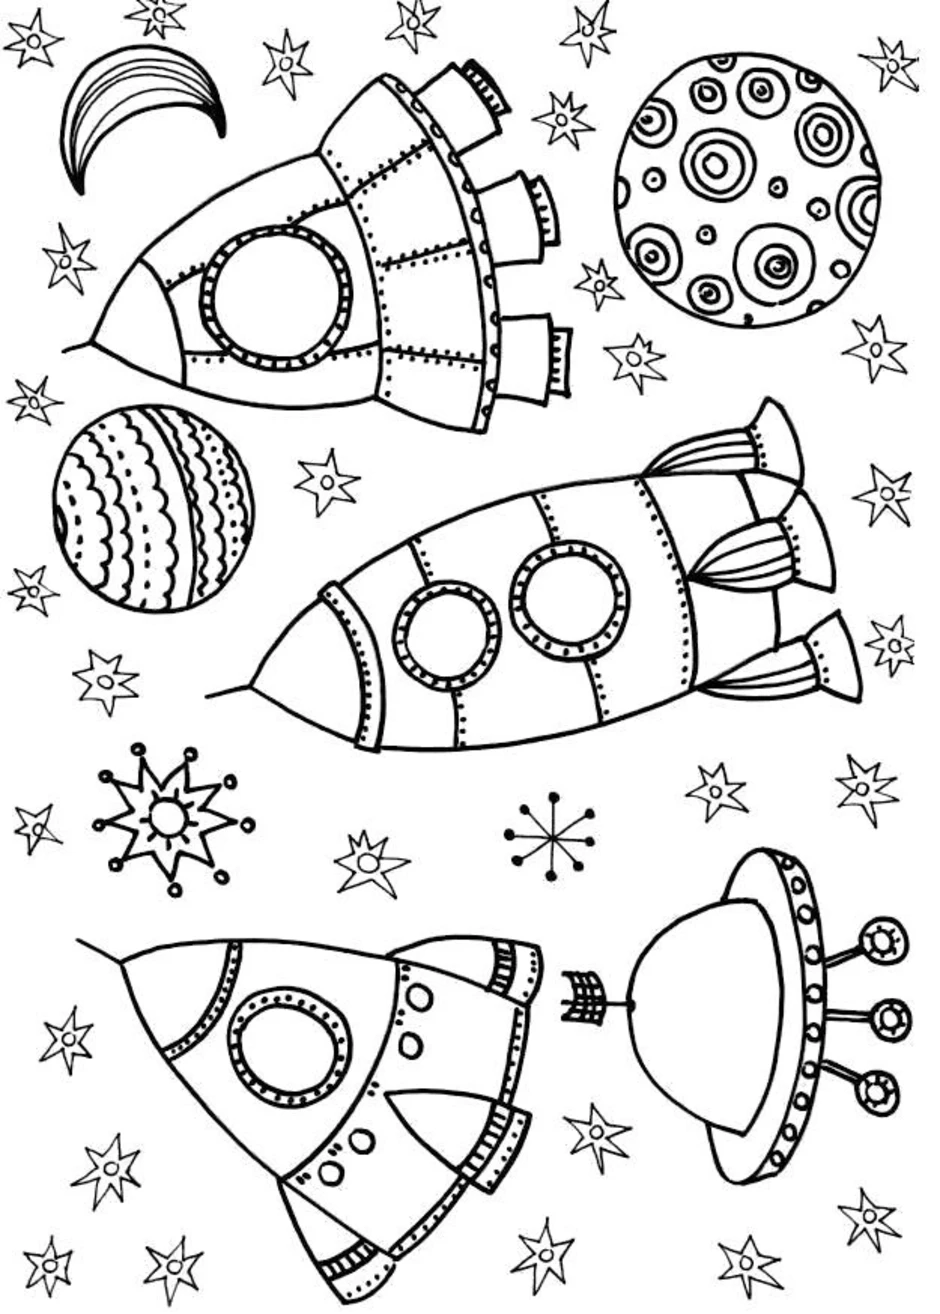 Раскраски к дню космонавтики для детей распечатать. Космос раскраска для детей. Раскраска день космонавтики для детей. Раскраска. В космосе. Космонавтика раскраски для детей.